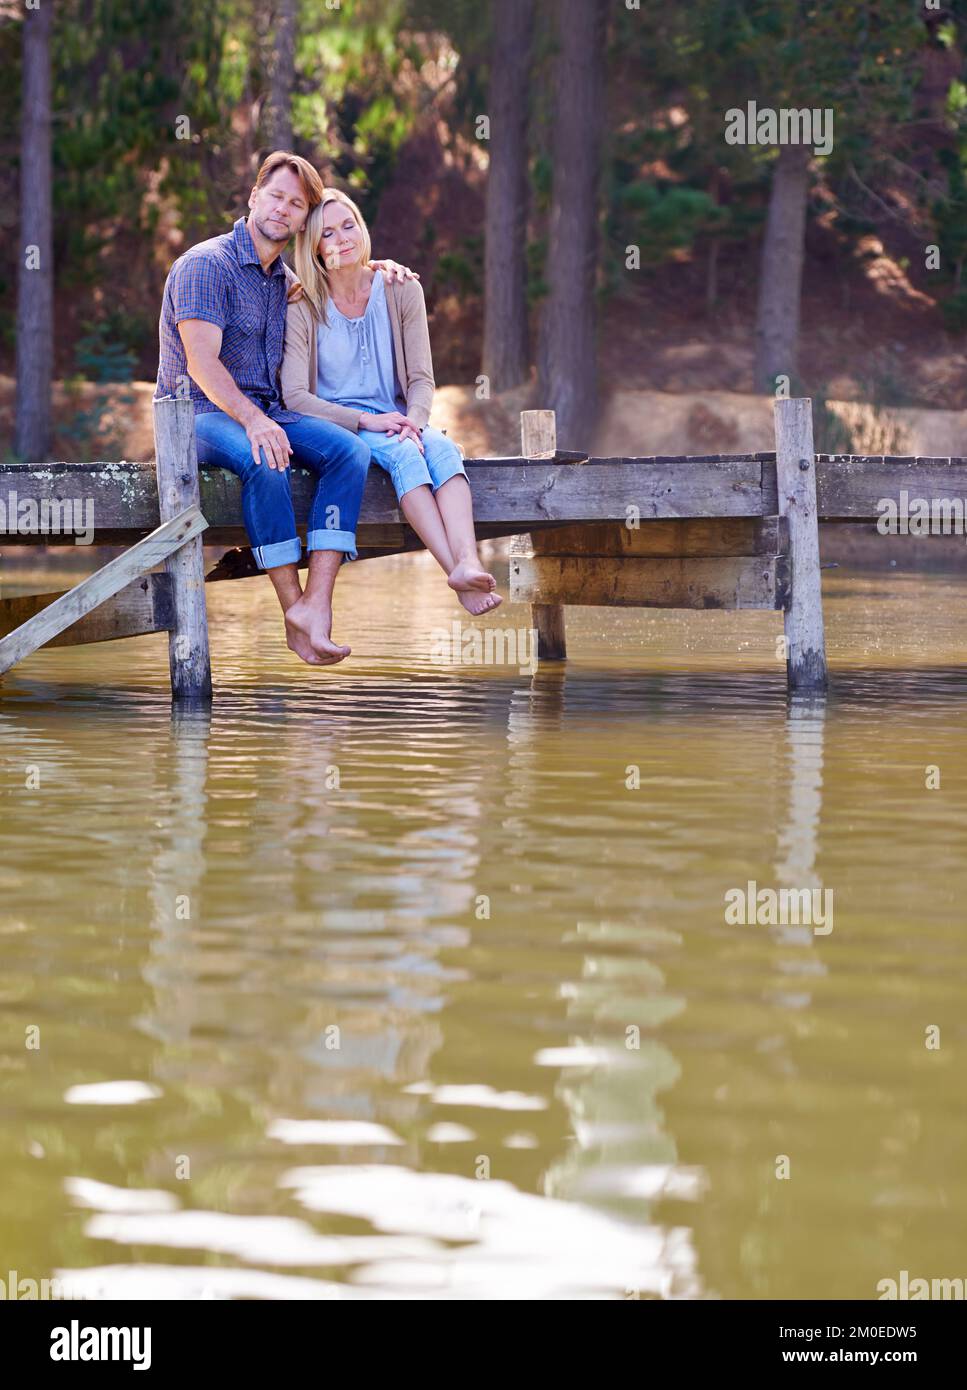 Ich bin froh, dass wir uns diese Zeit genommen haben. Ein liebevolles Ehepaar, das einen Moment auf dem Steg am See genießt. Stockfoto